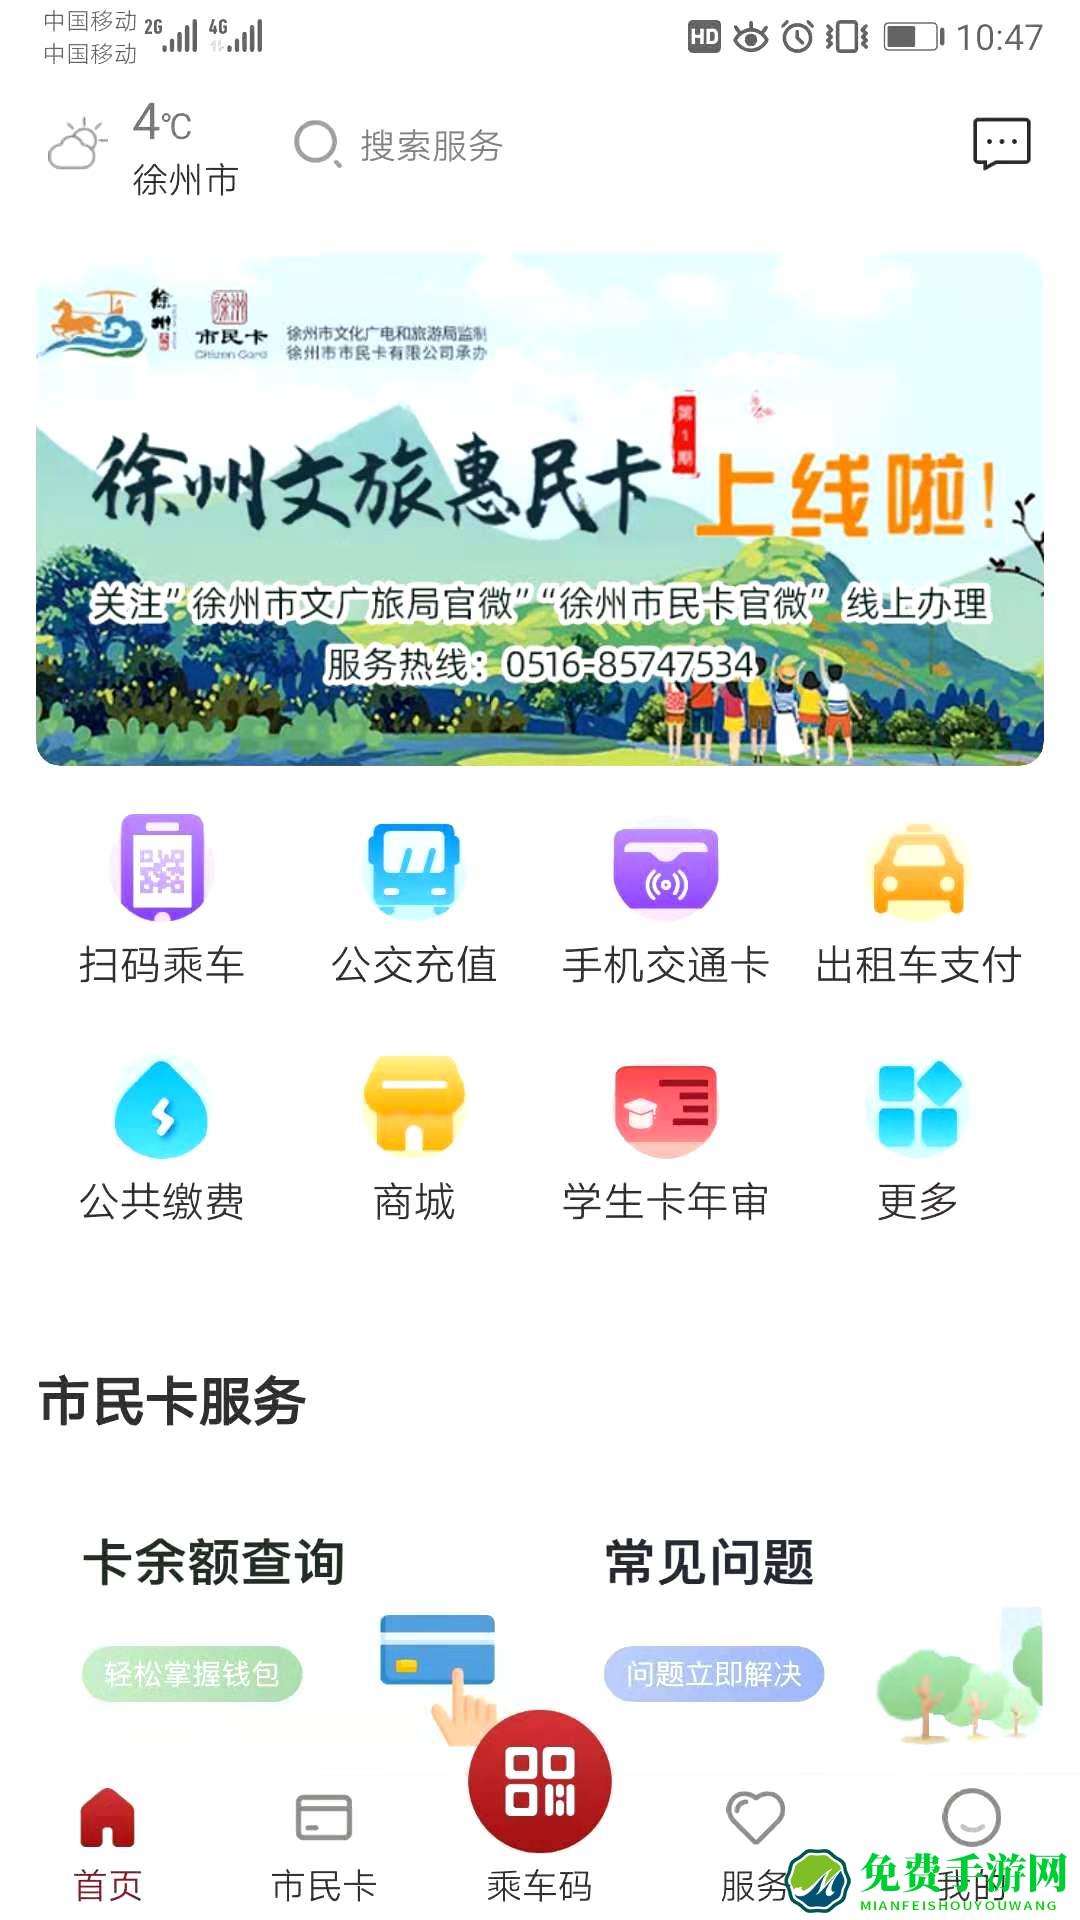 徐州市民卡手机版